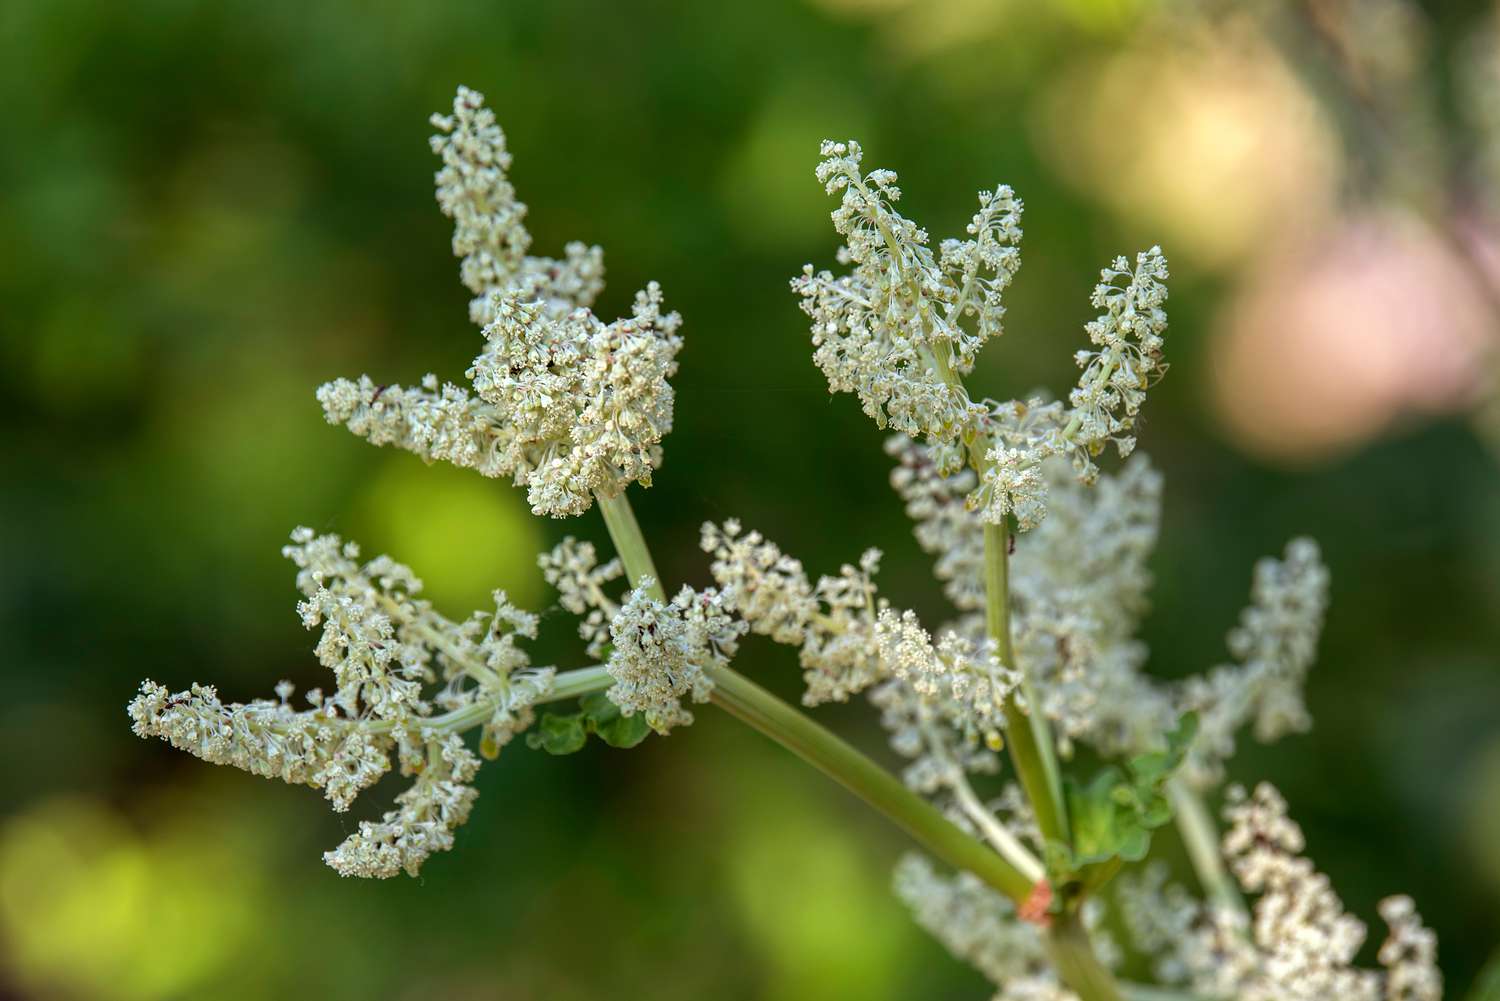 Rhabarberpflanze mit winzigen weißen Blüten an den Stielenden in Nahaufnahme